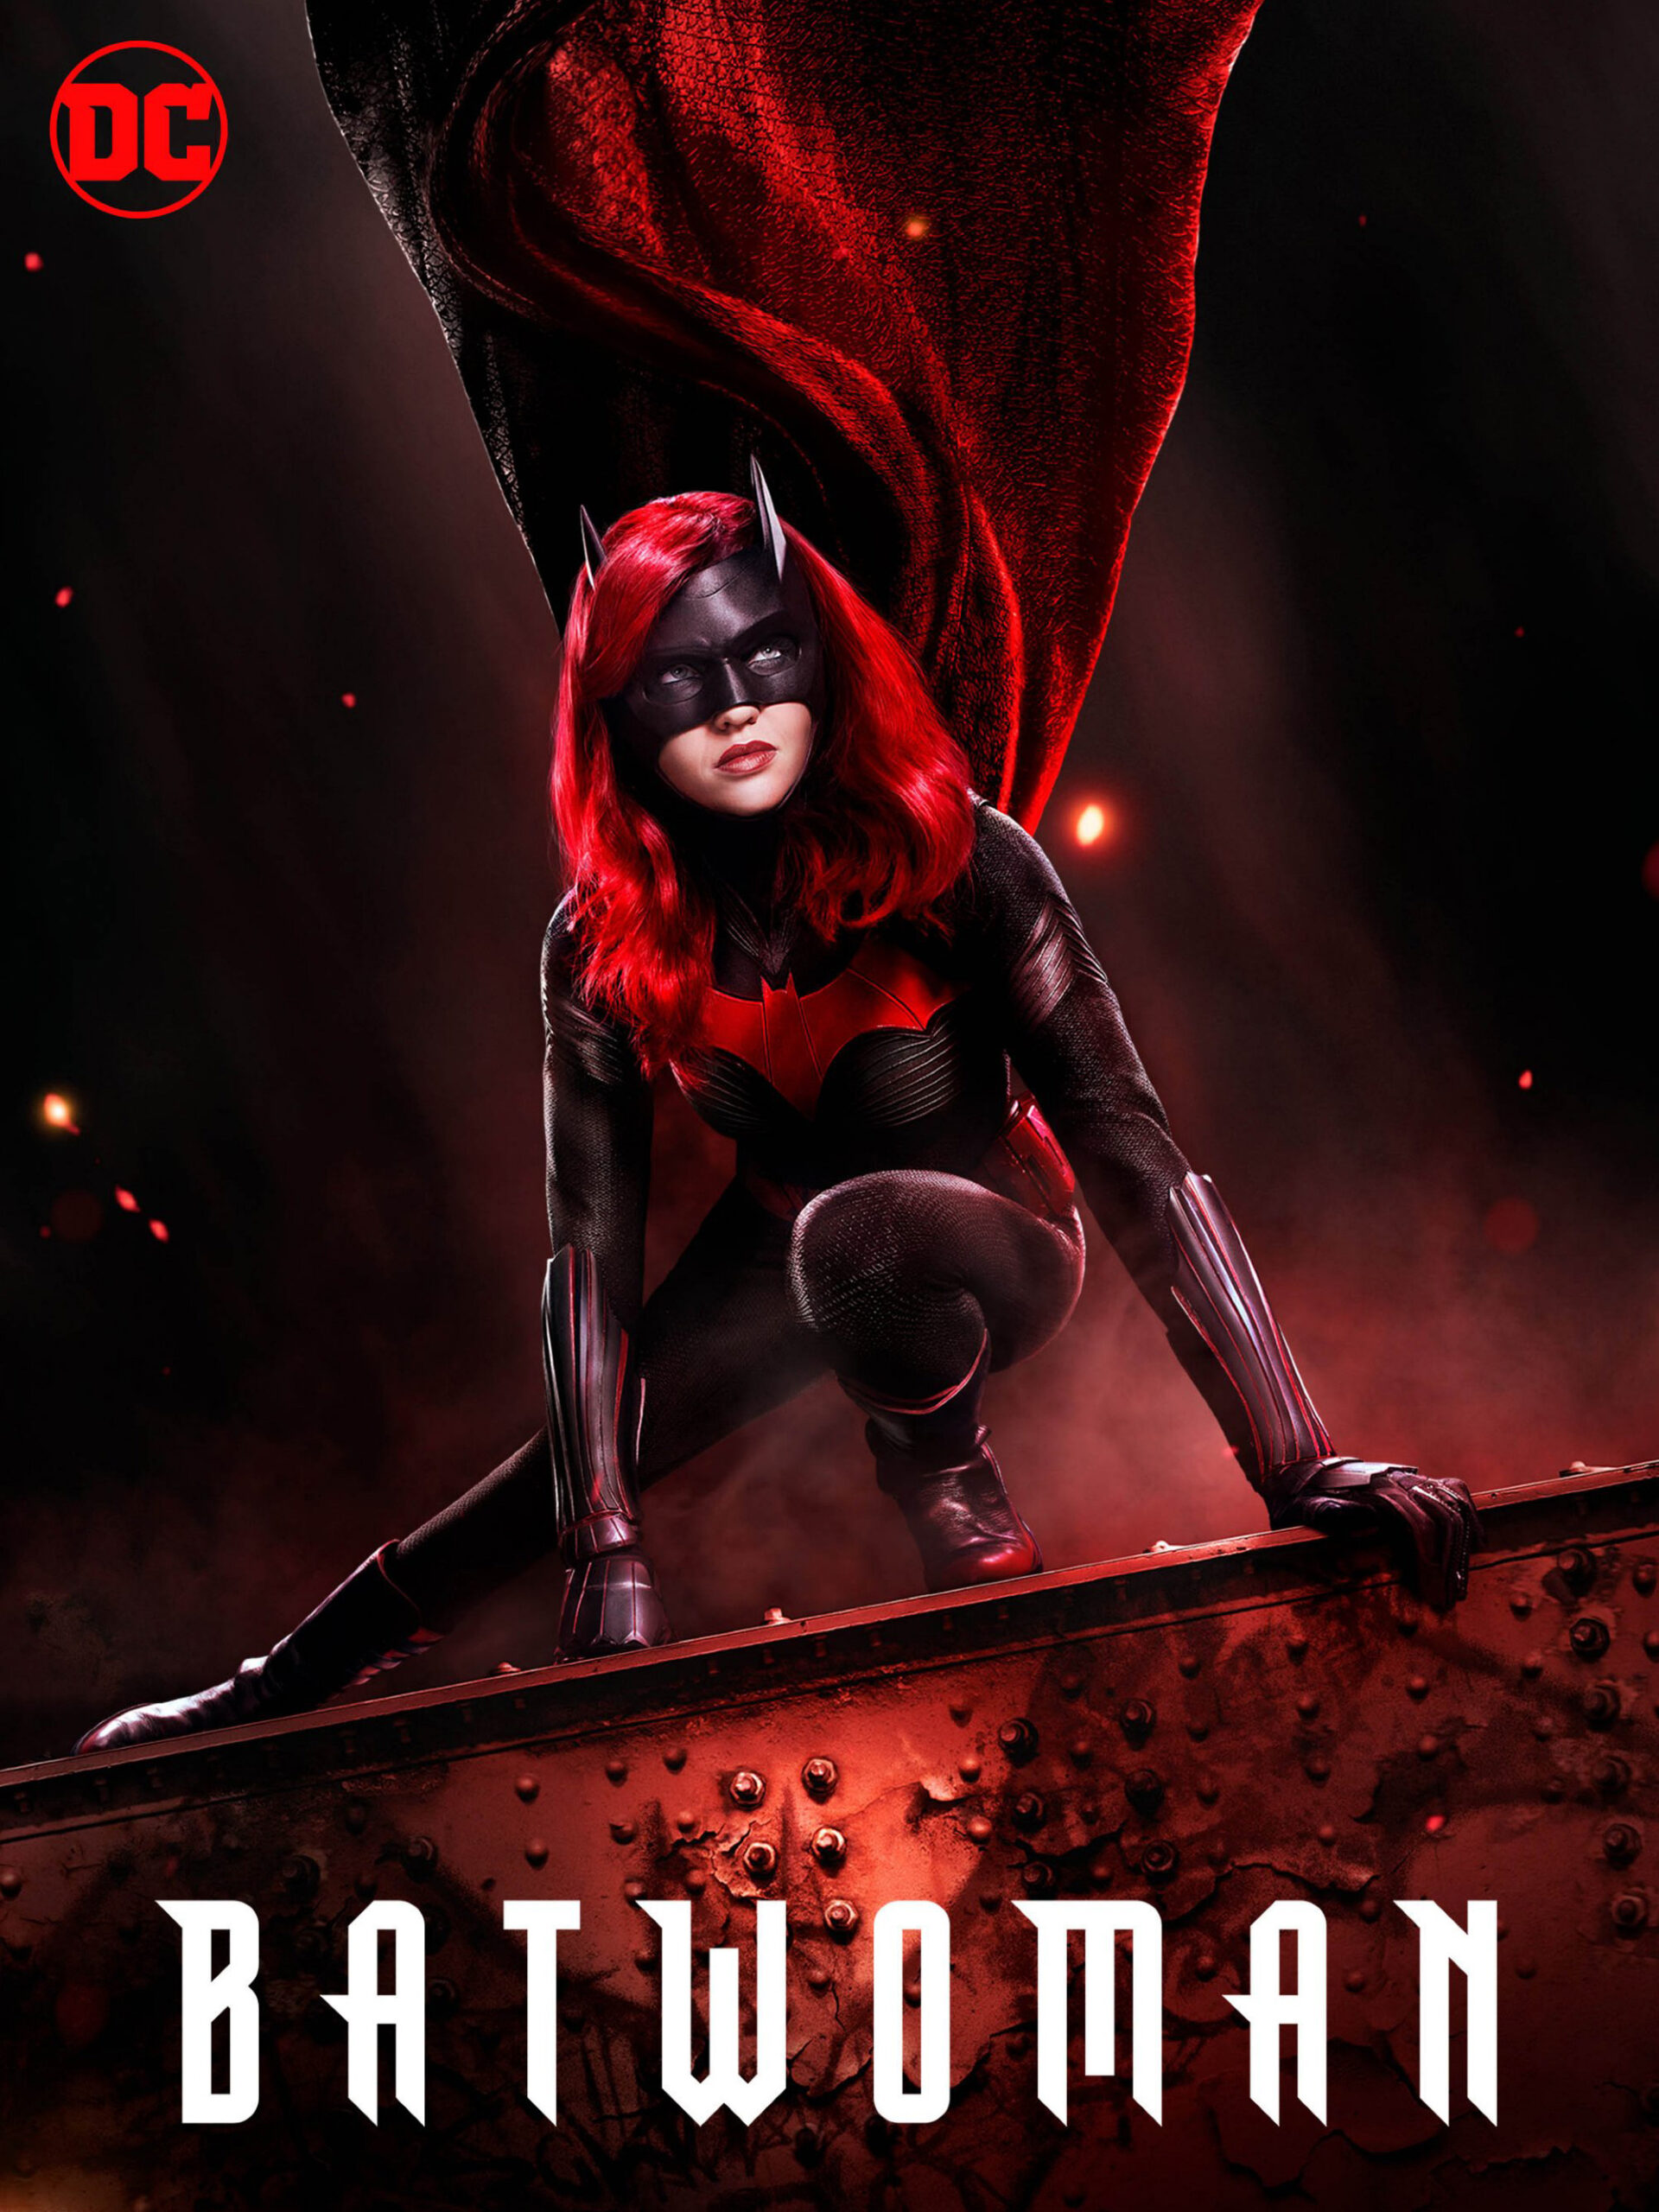 ดูหนังออนไลน์ฟรี Batwoman Season 1 (2019) EP.3 แบทวูแมน ซีซั่น 1 ตอนที่ 3 (Soundtrack)